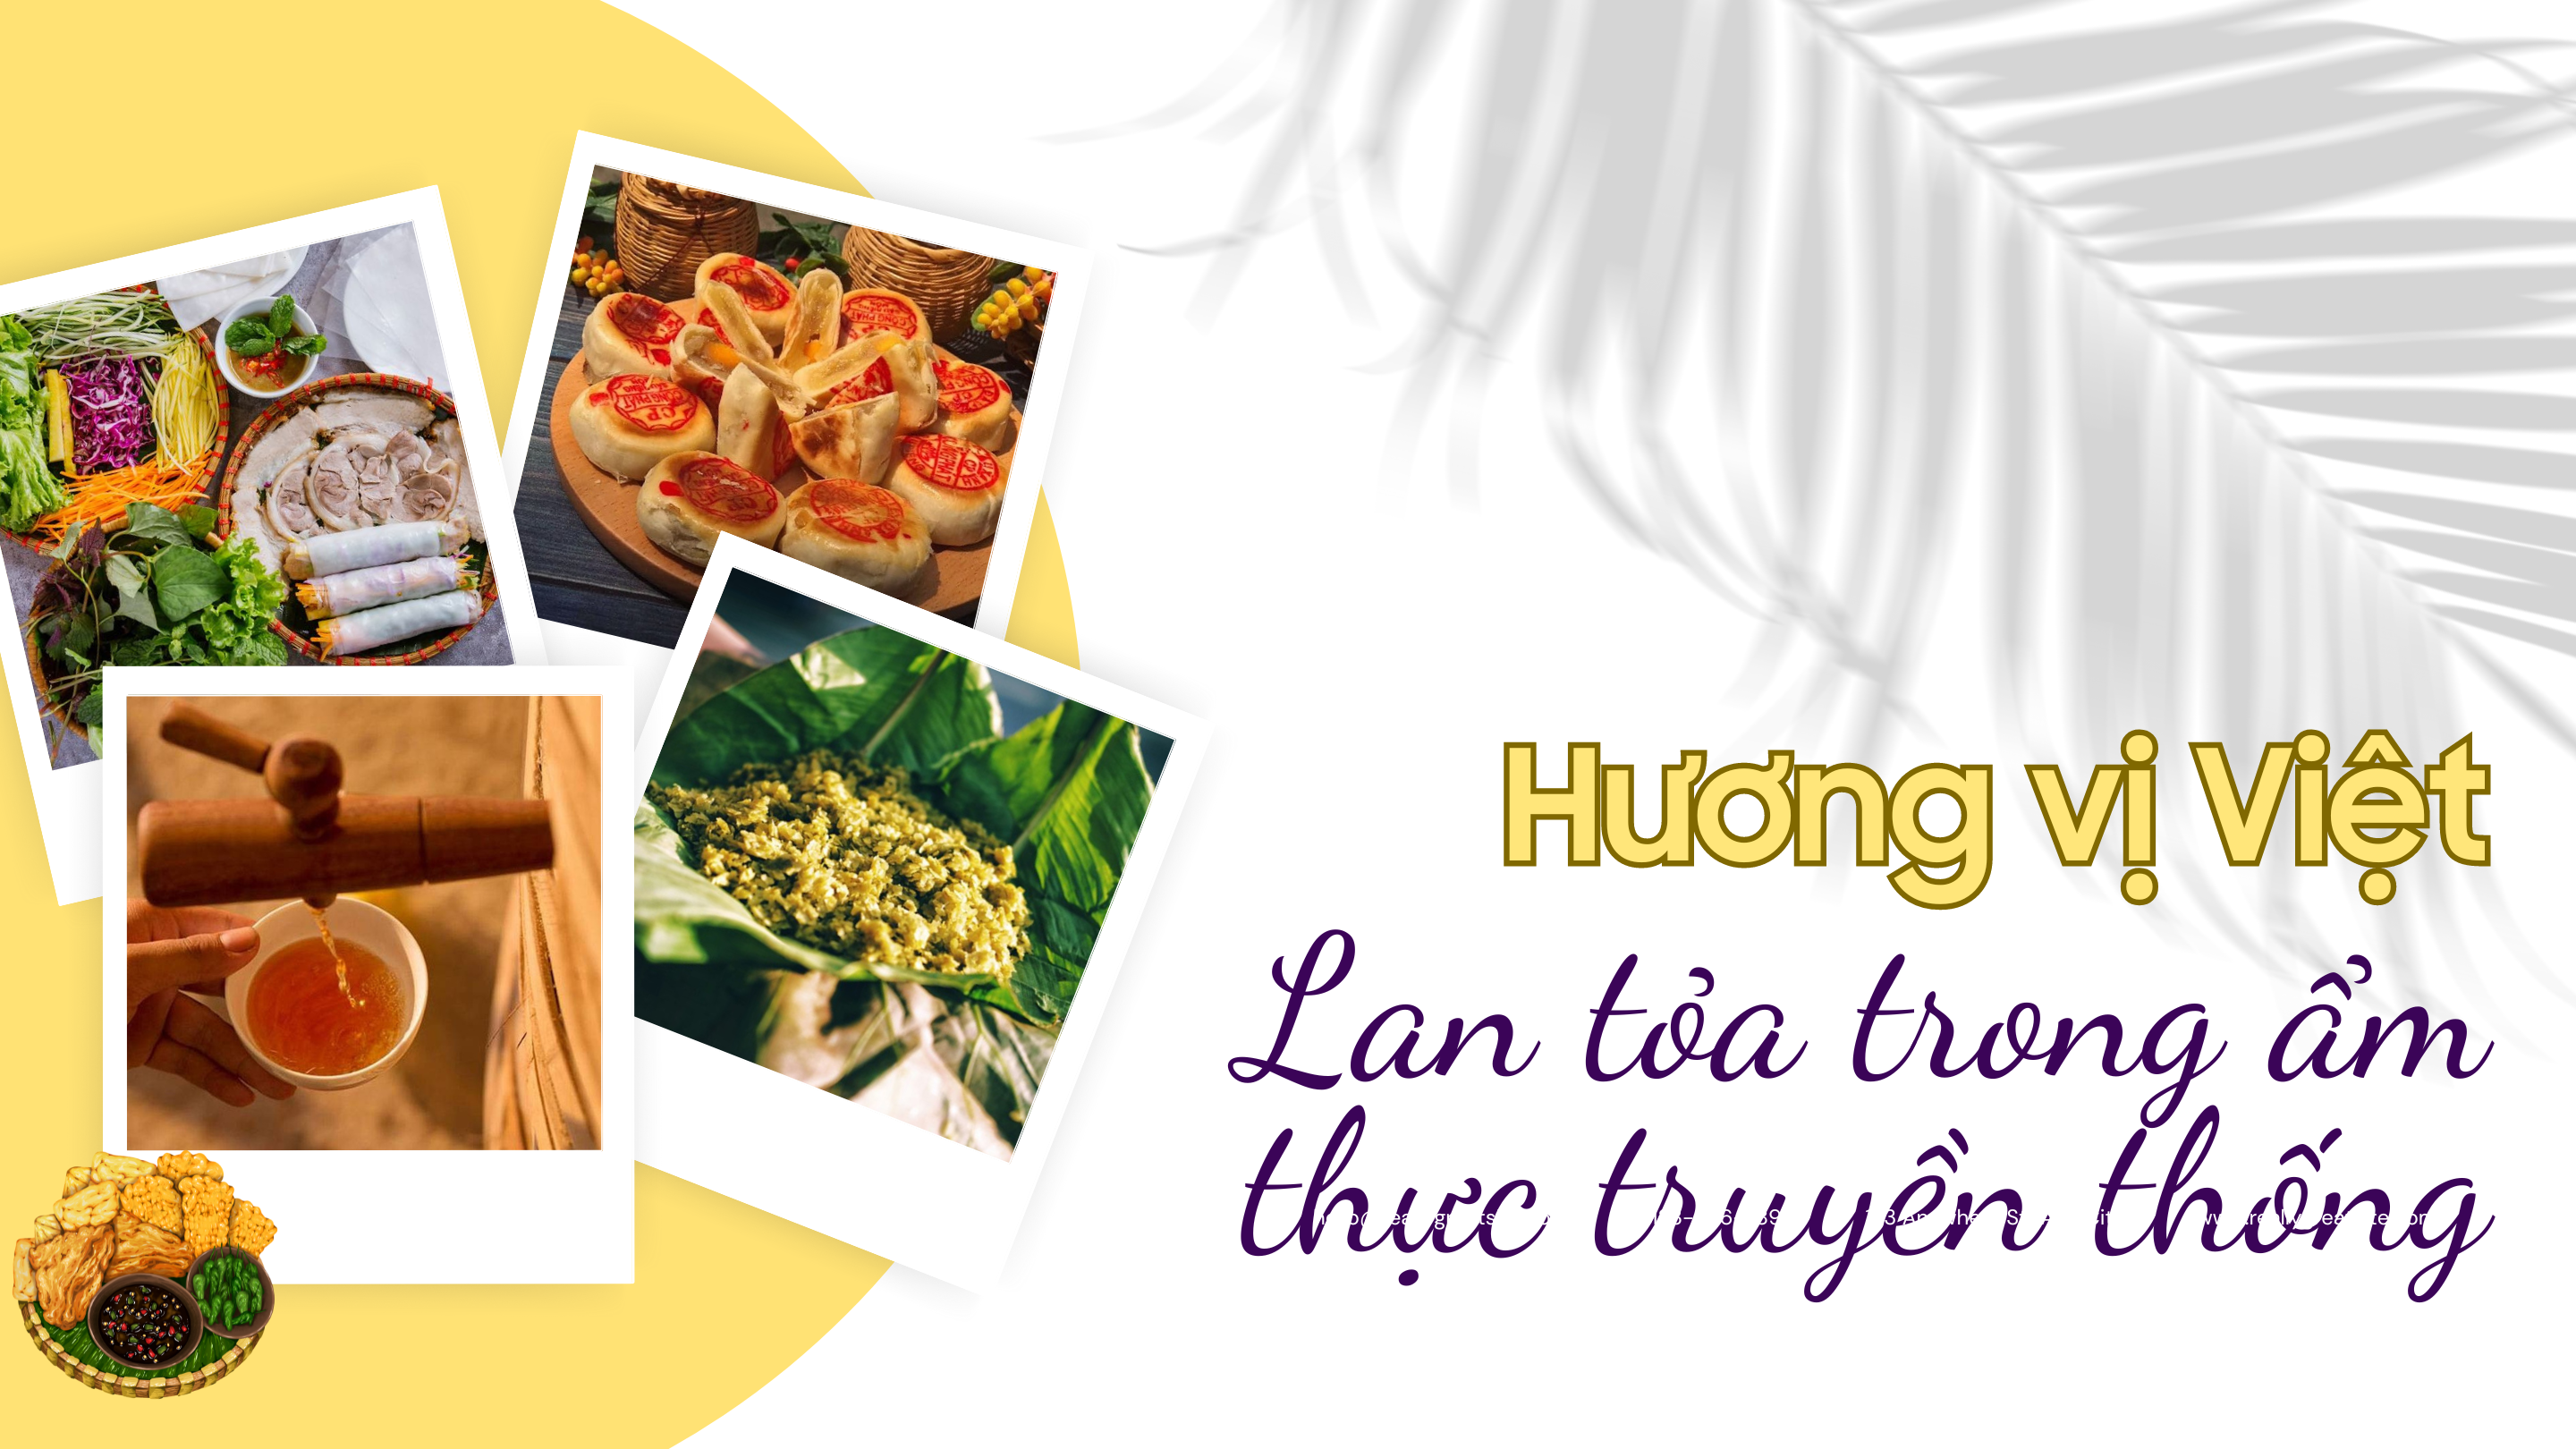 Hương vị Việt lan tỏa trong ẩm thực truyền thống